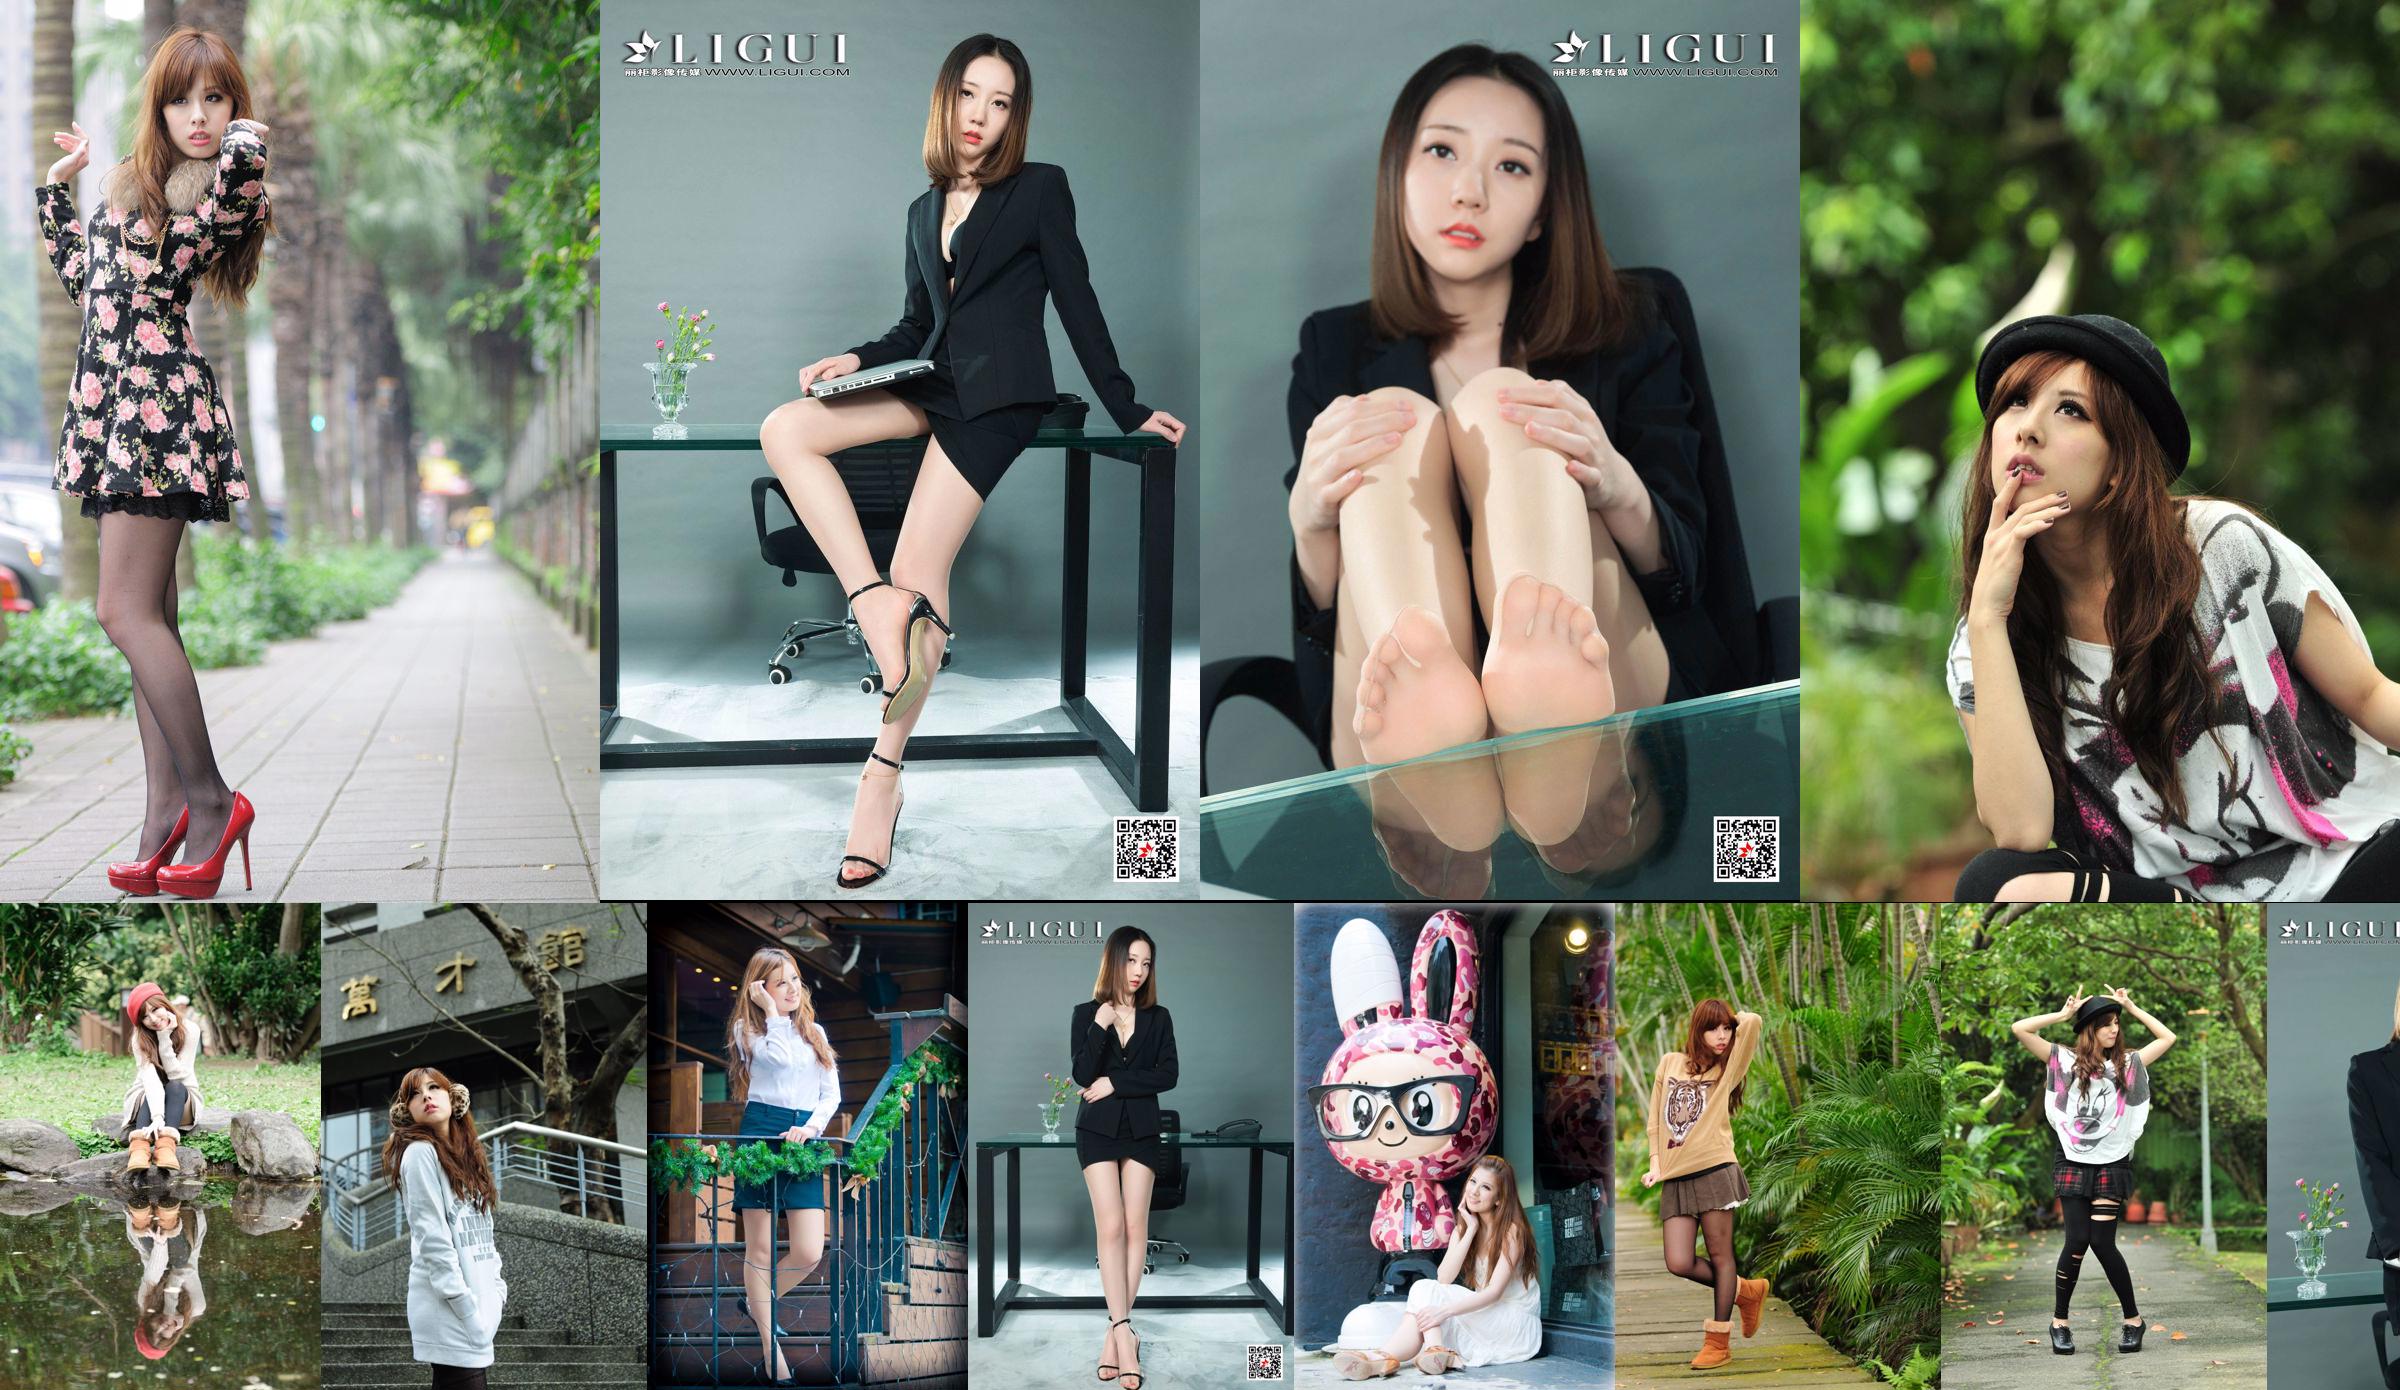 La modelo de belleza taiwanesa Xiaomi Kate su foto fresca en la calle No.c81138 Página 1